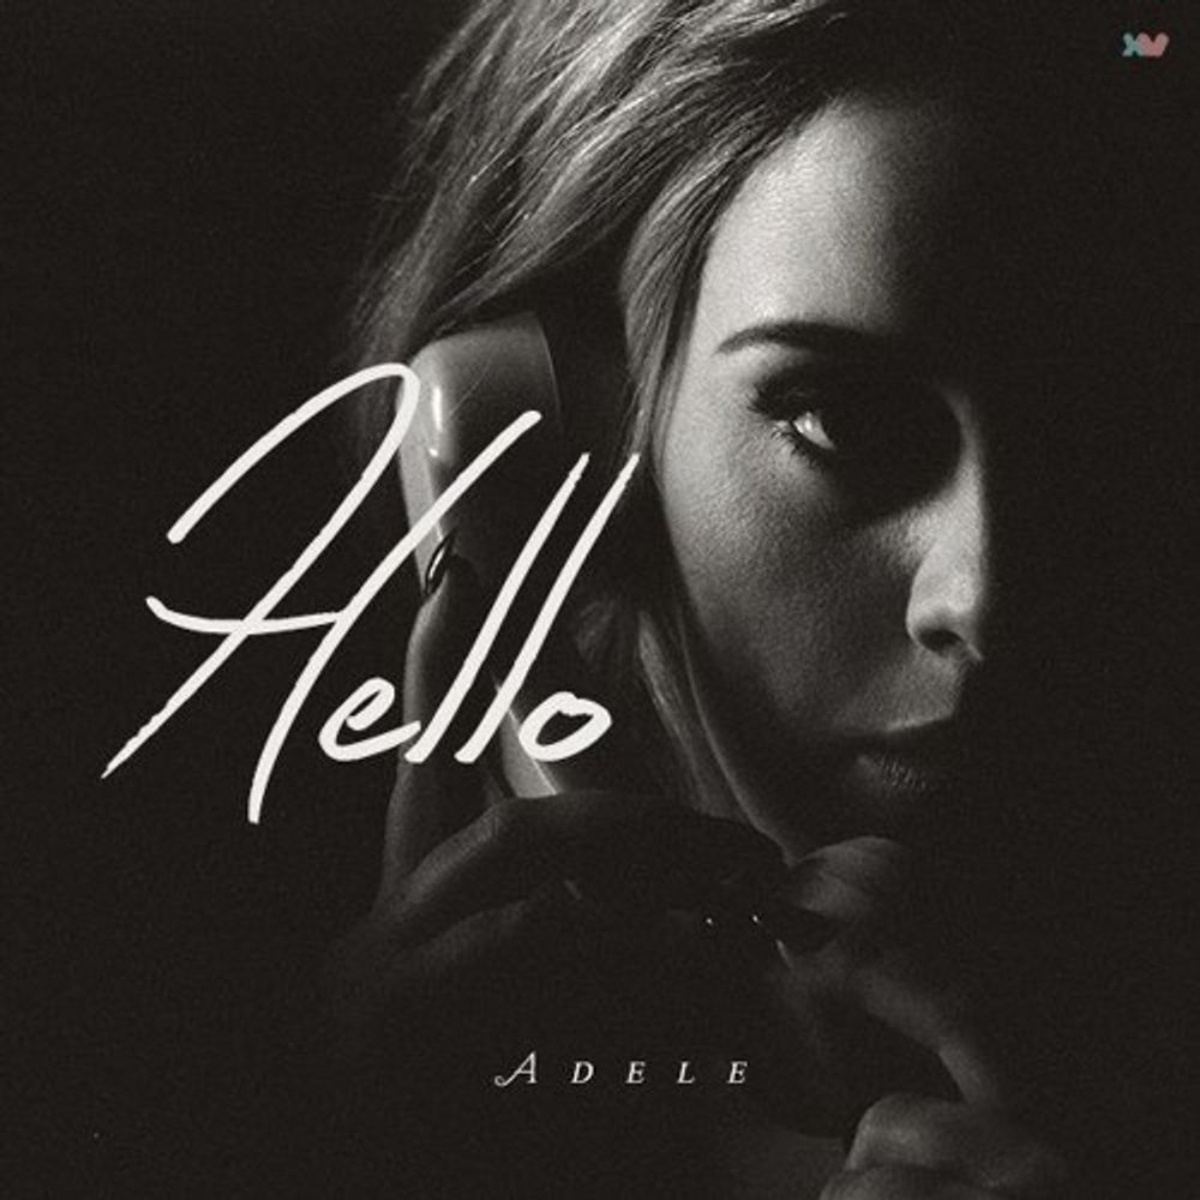 Reprise du single "Hello" d'Adele